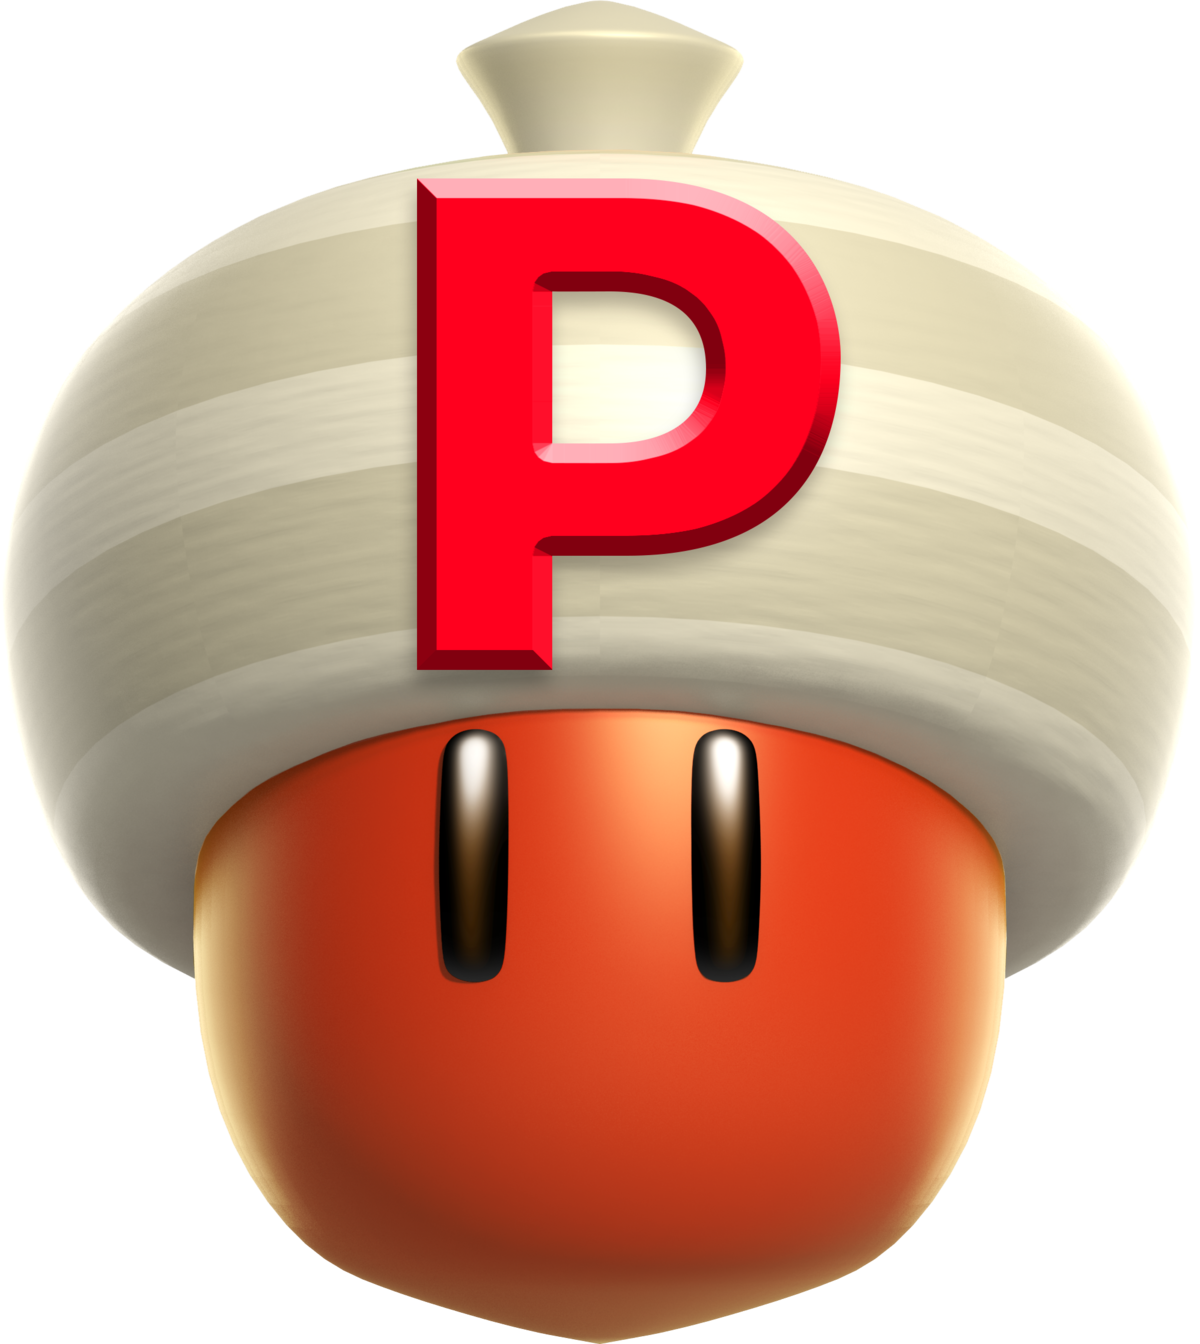 P-Acorn - Super Mario Wiki, the Mario encyclopedia